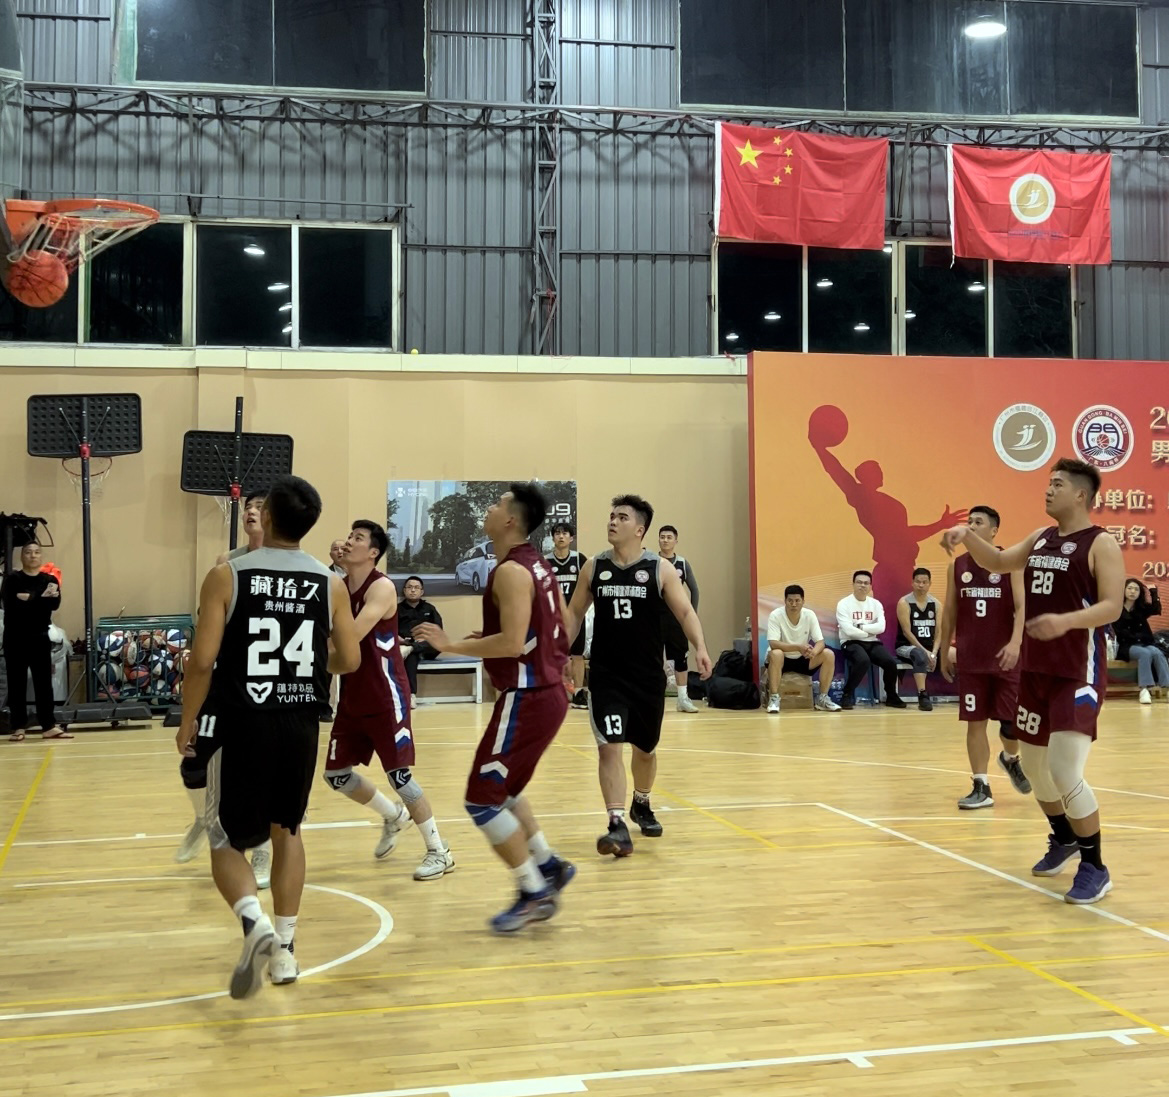 第七届“八闽杯”男子篮球友谊赛在广州开幕，广东省福建商会组队参赛